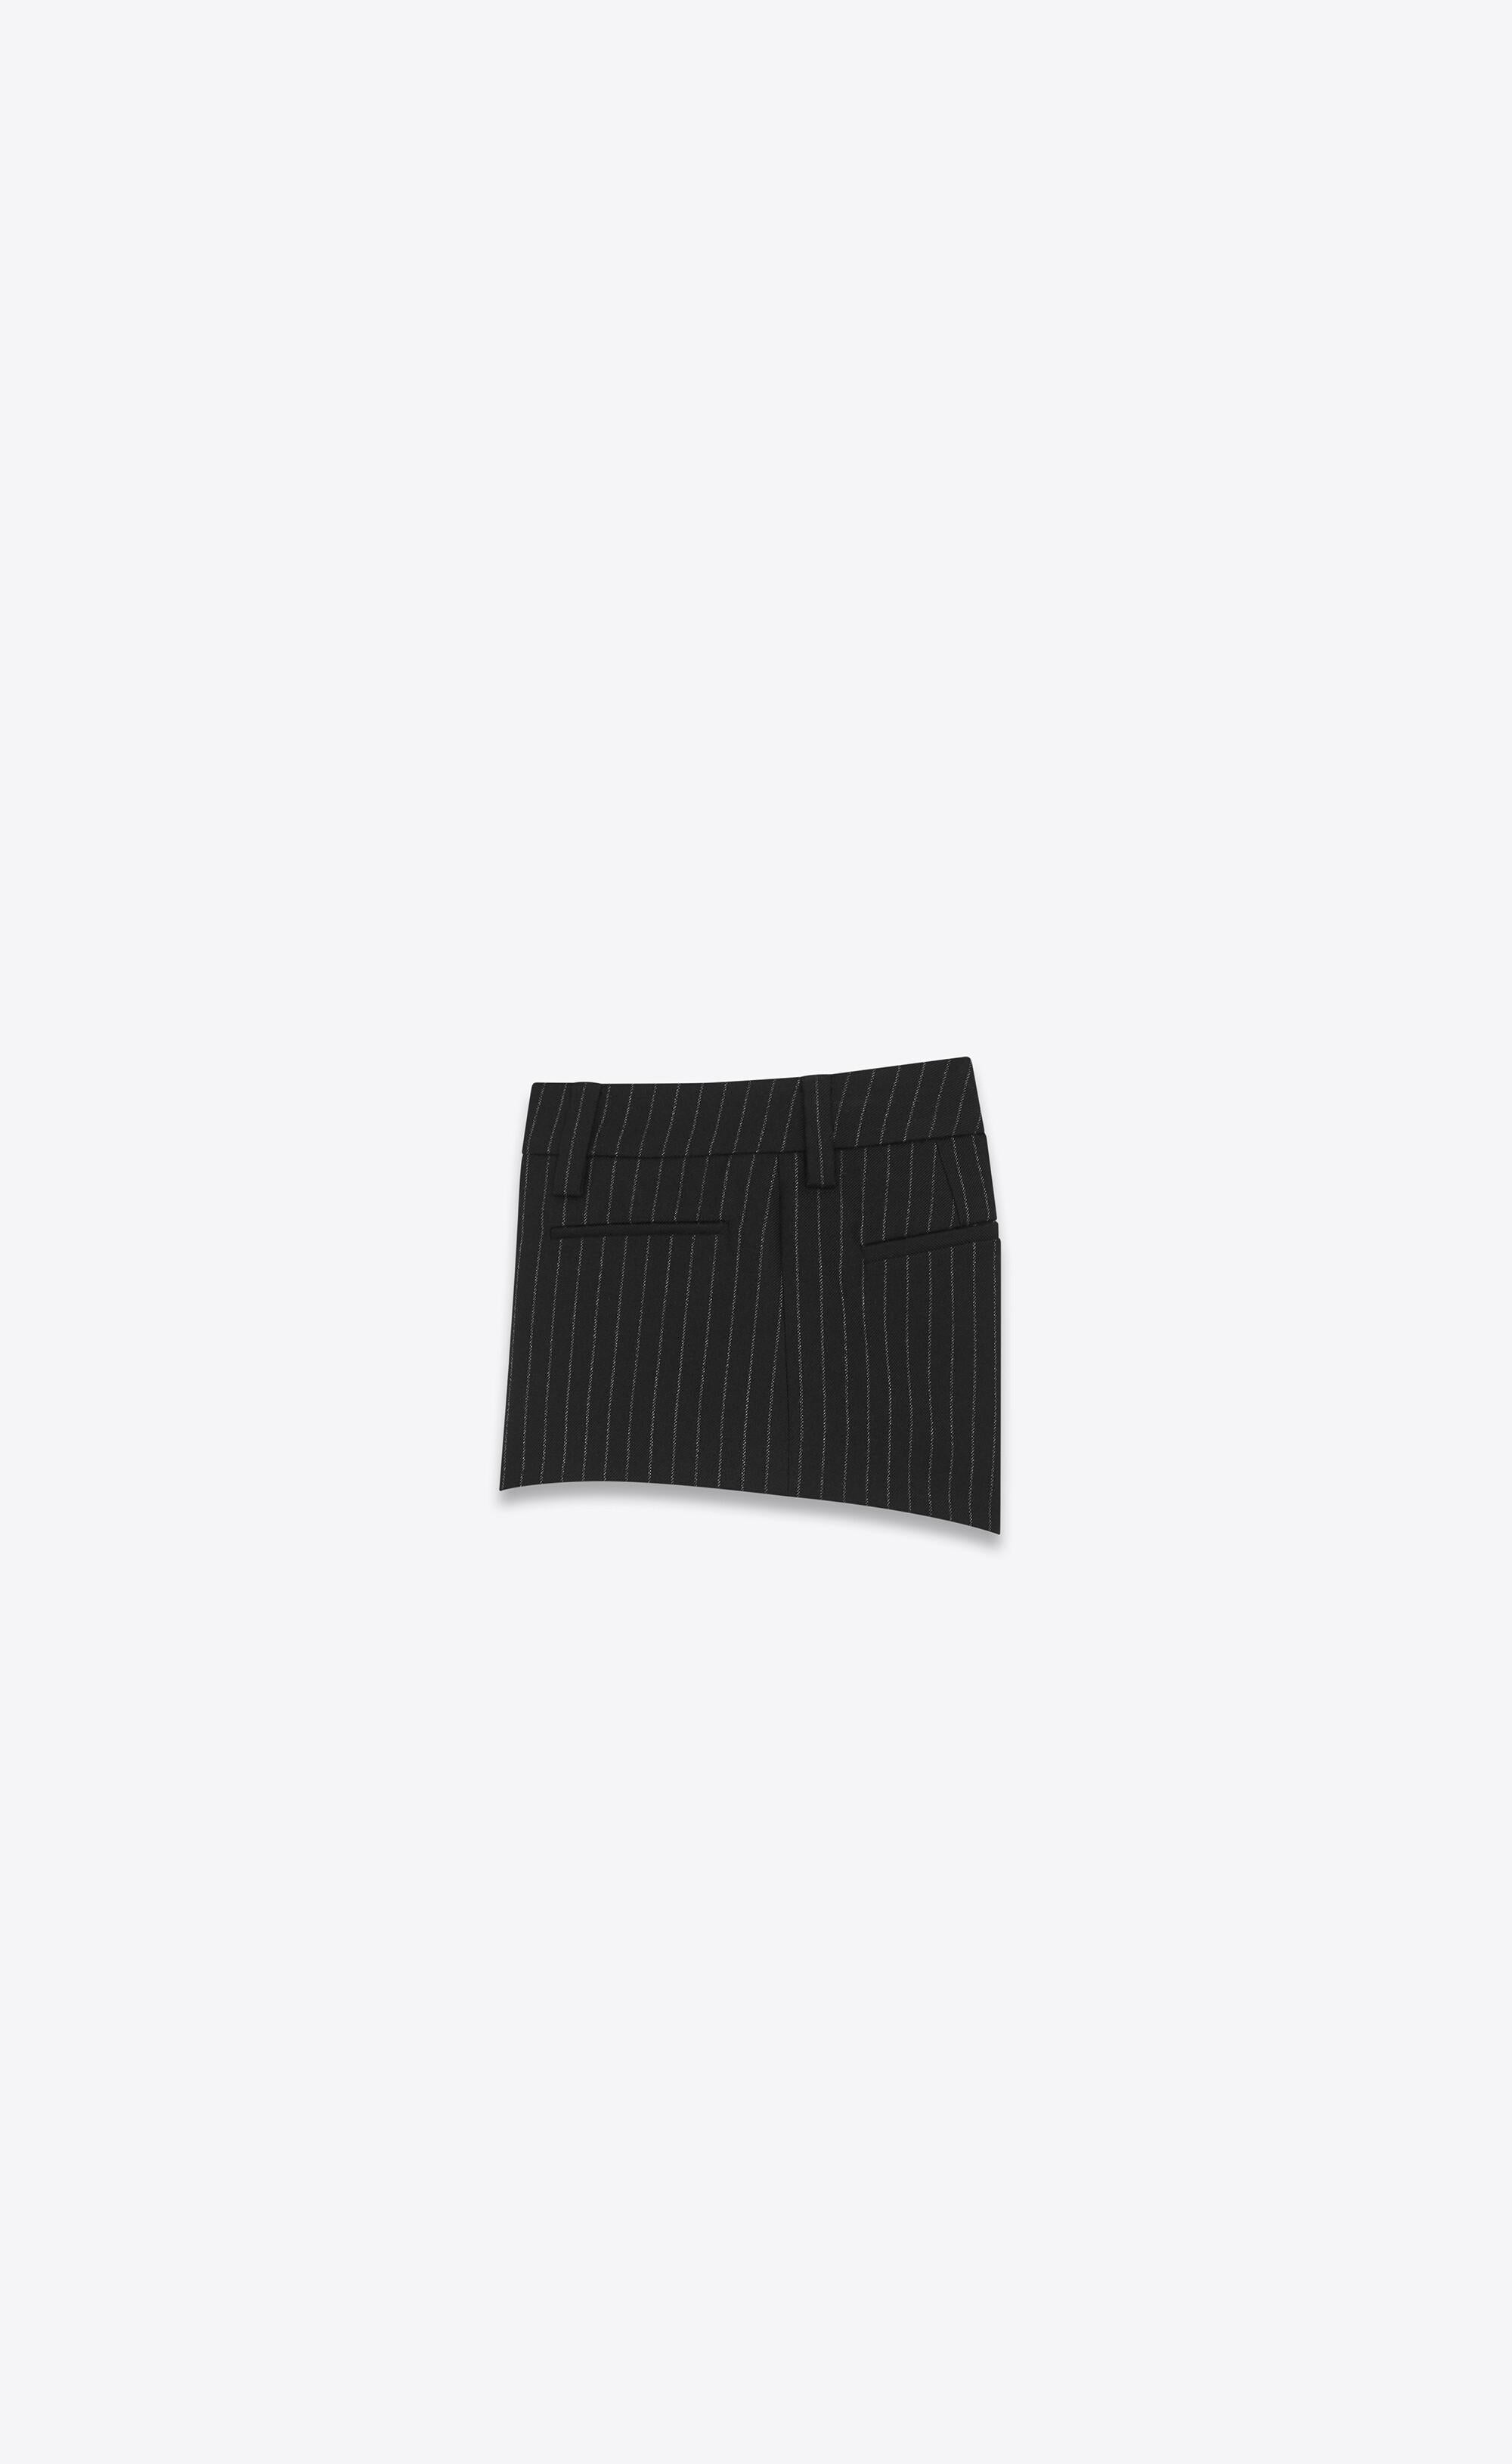 Saint Laurent Runway Black Rive Gauche Striped Wool Flannel Tailored Mini Shorts Size 36

Ce mini short Saint Laurent Rive Gauche a fait ses débuts lors du défilé printemps-été 2020, porté par la belle Kaia Gerber. Elle présente des poches